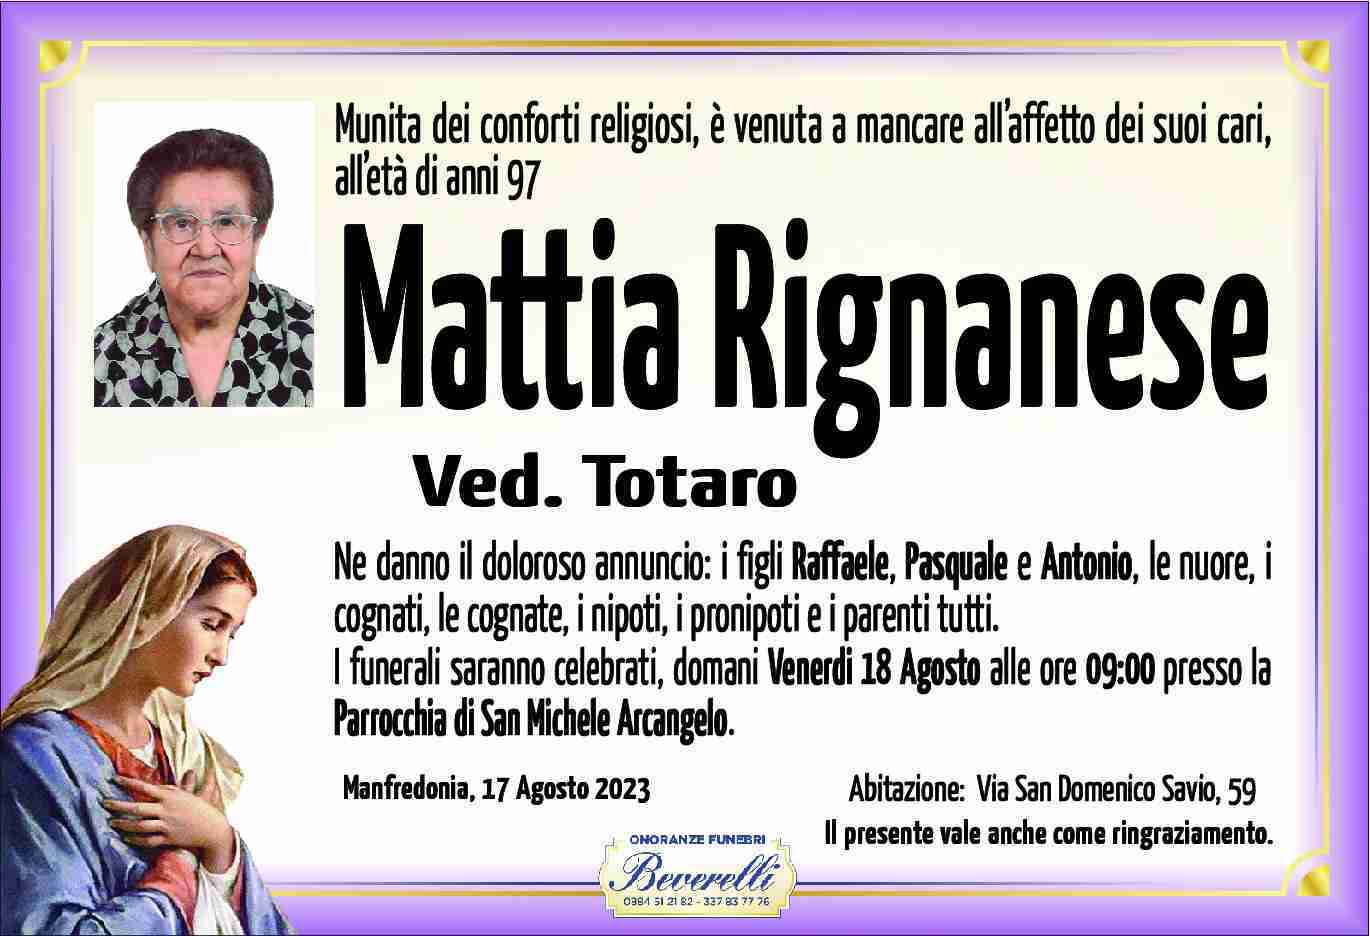 Mattia Rignanese